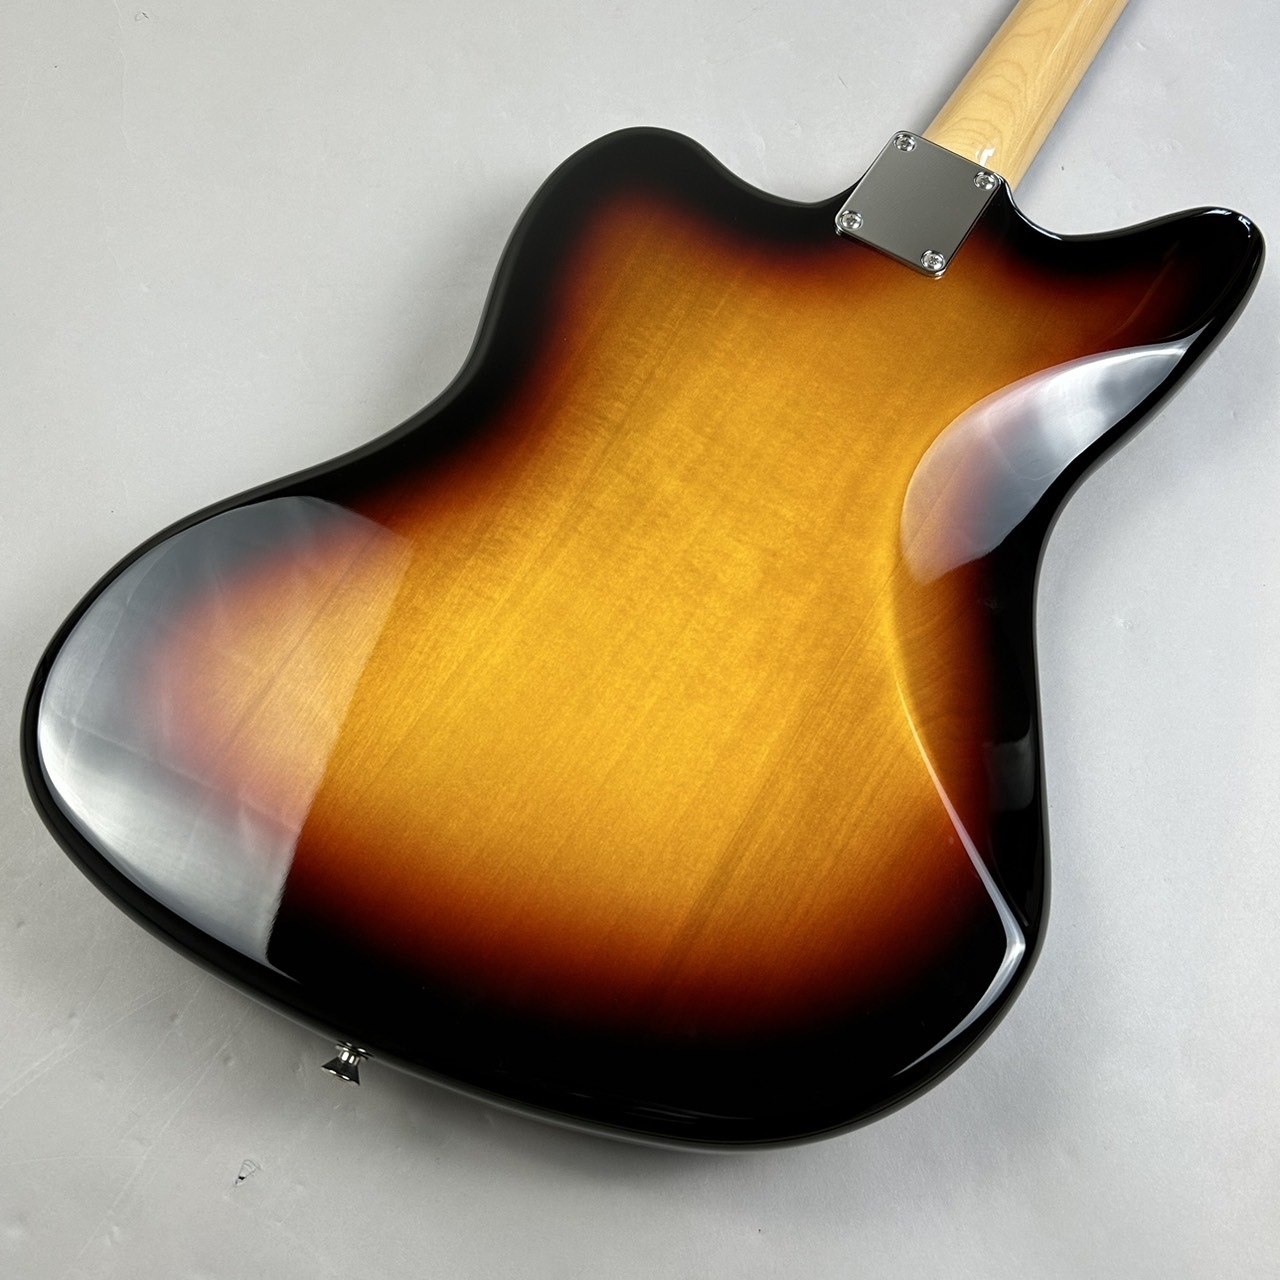 Fender Made in Japan Traditional 60s Jaguar3CS エレキギター 